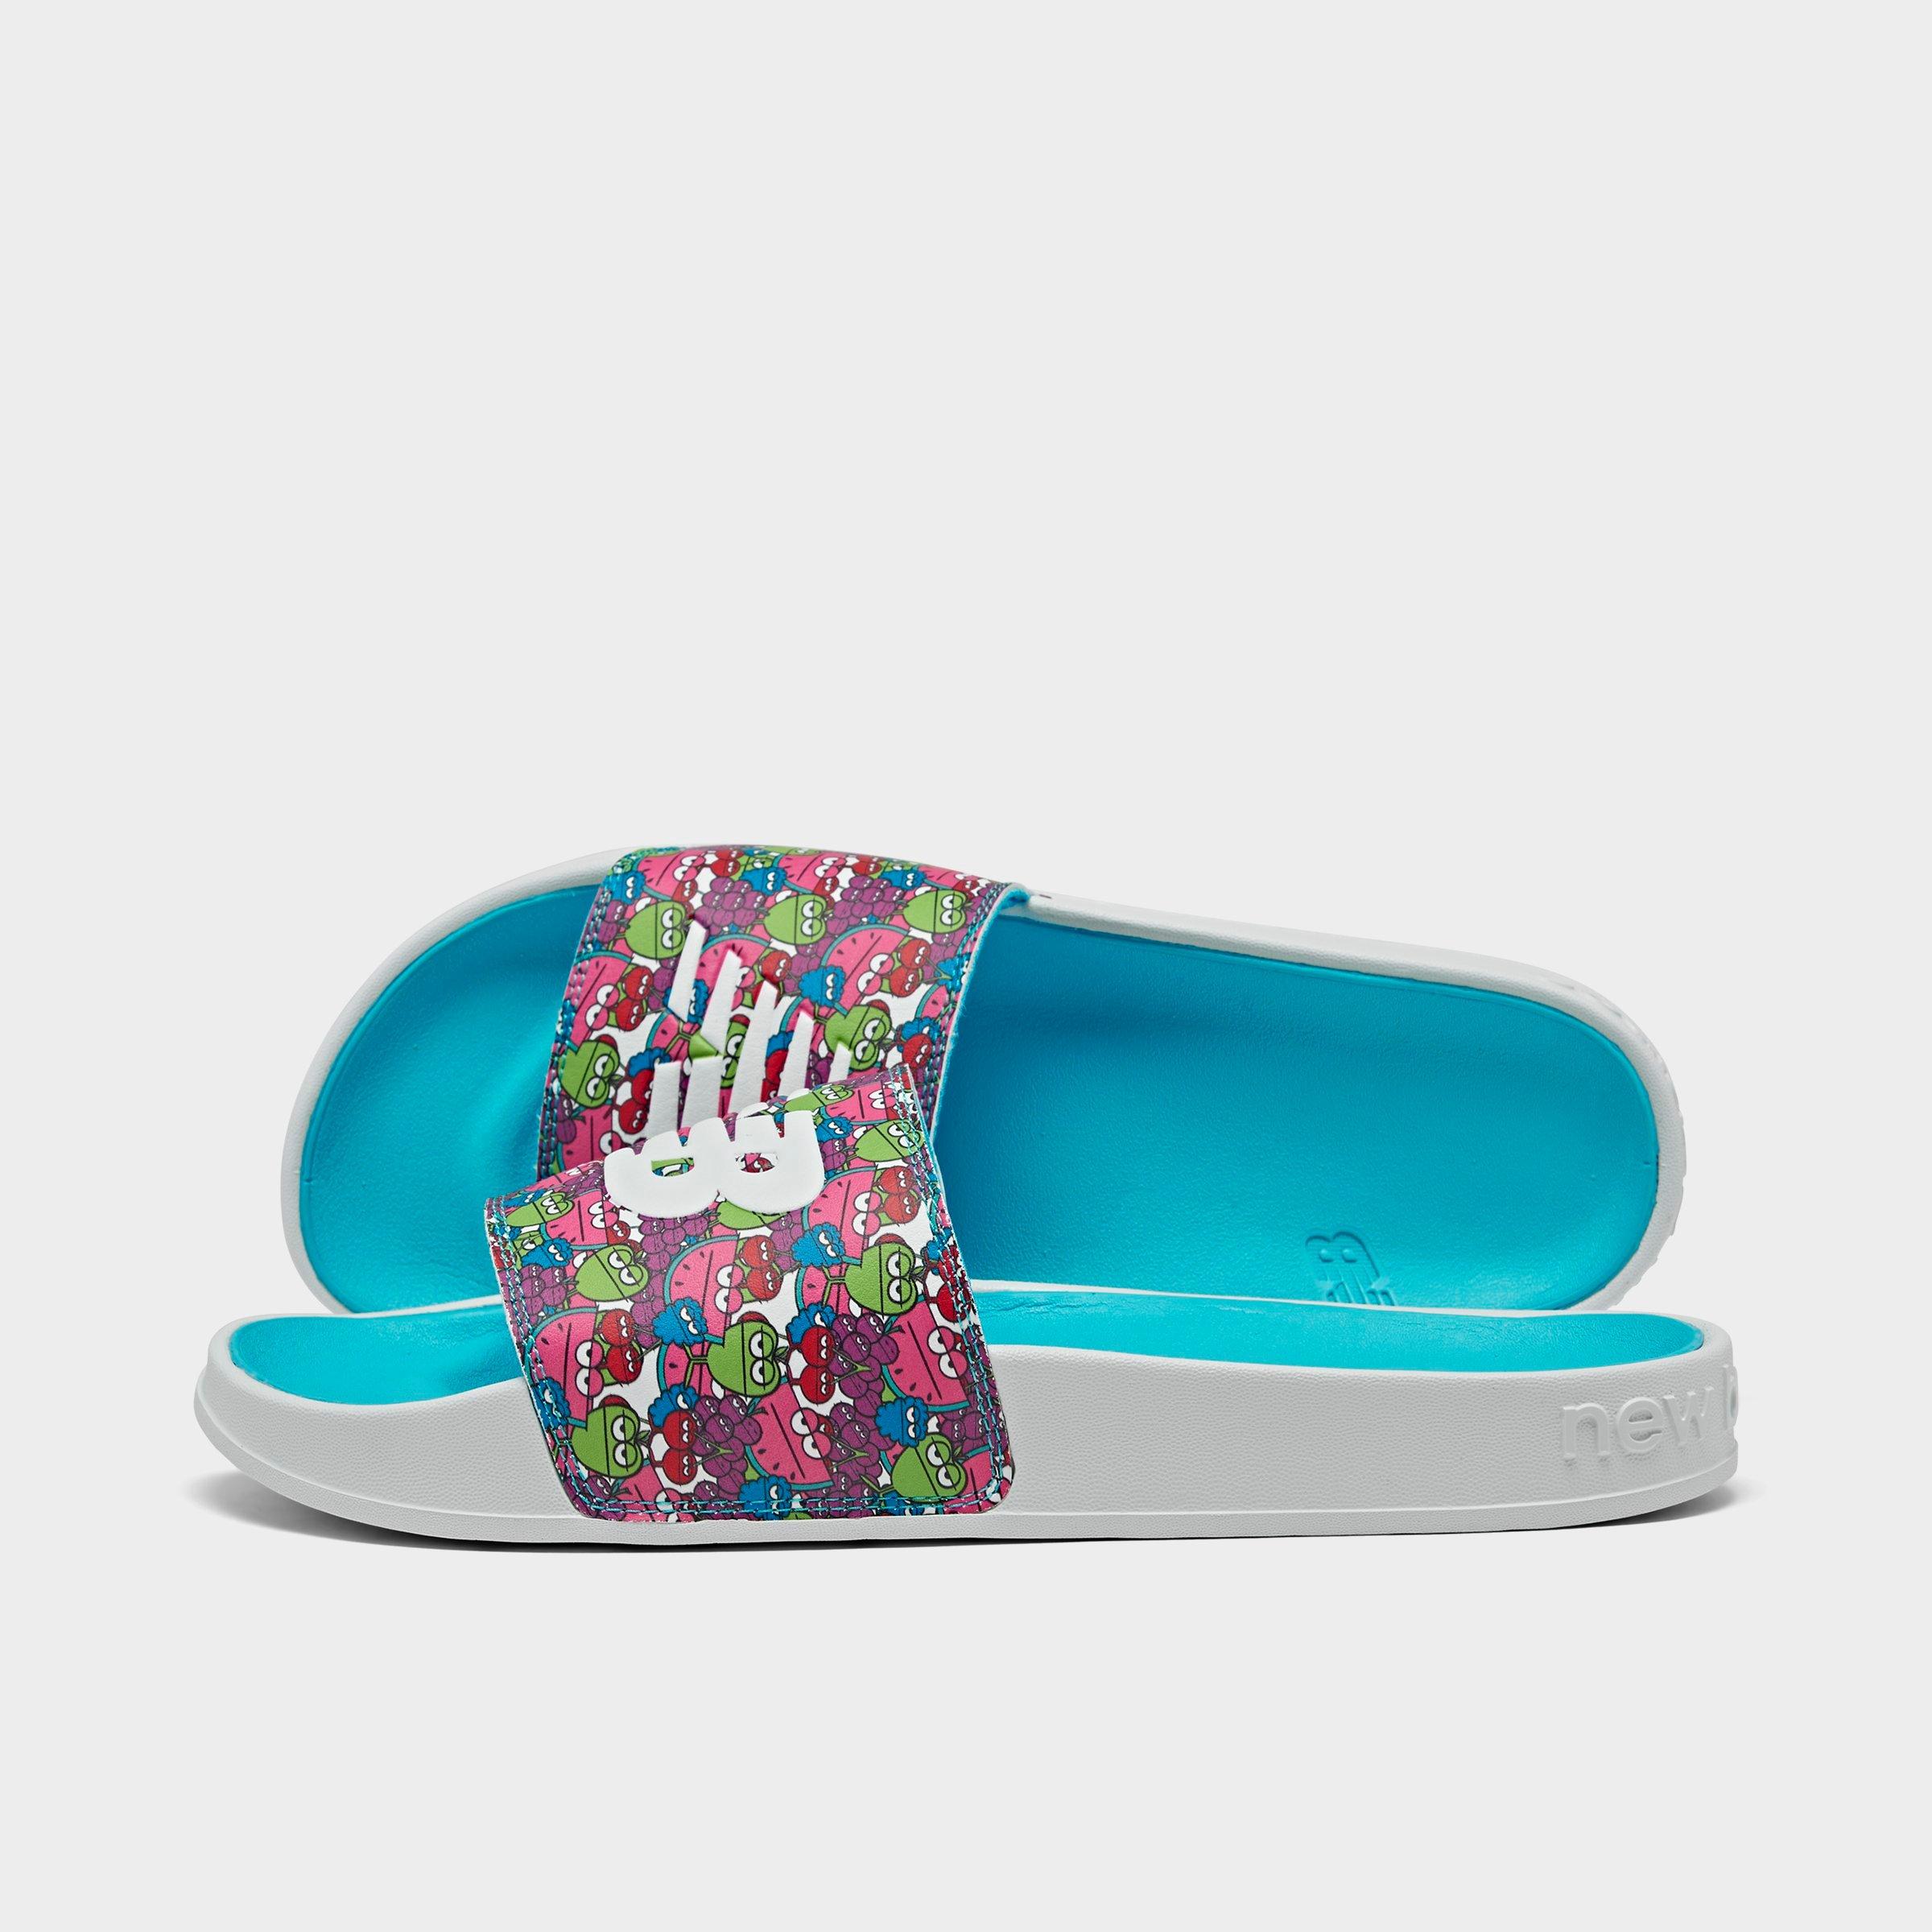 new slide slippers